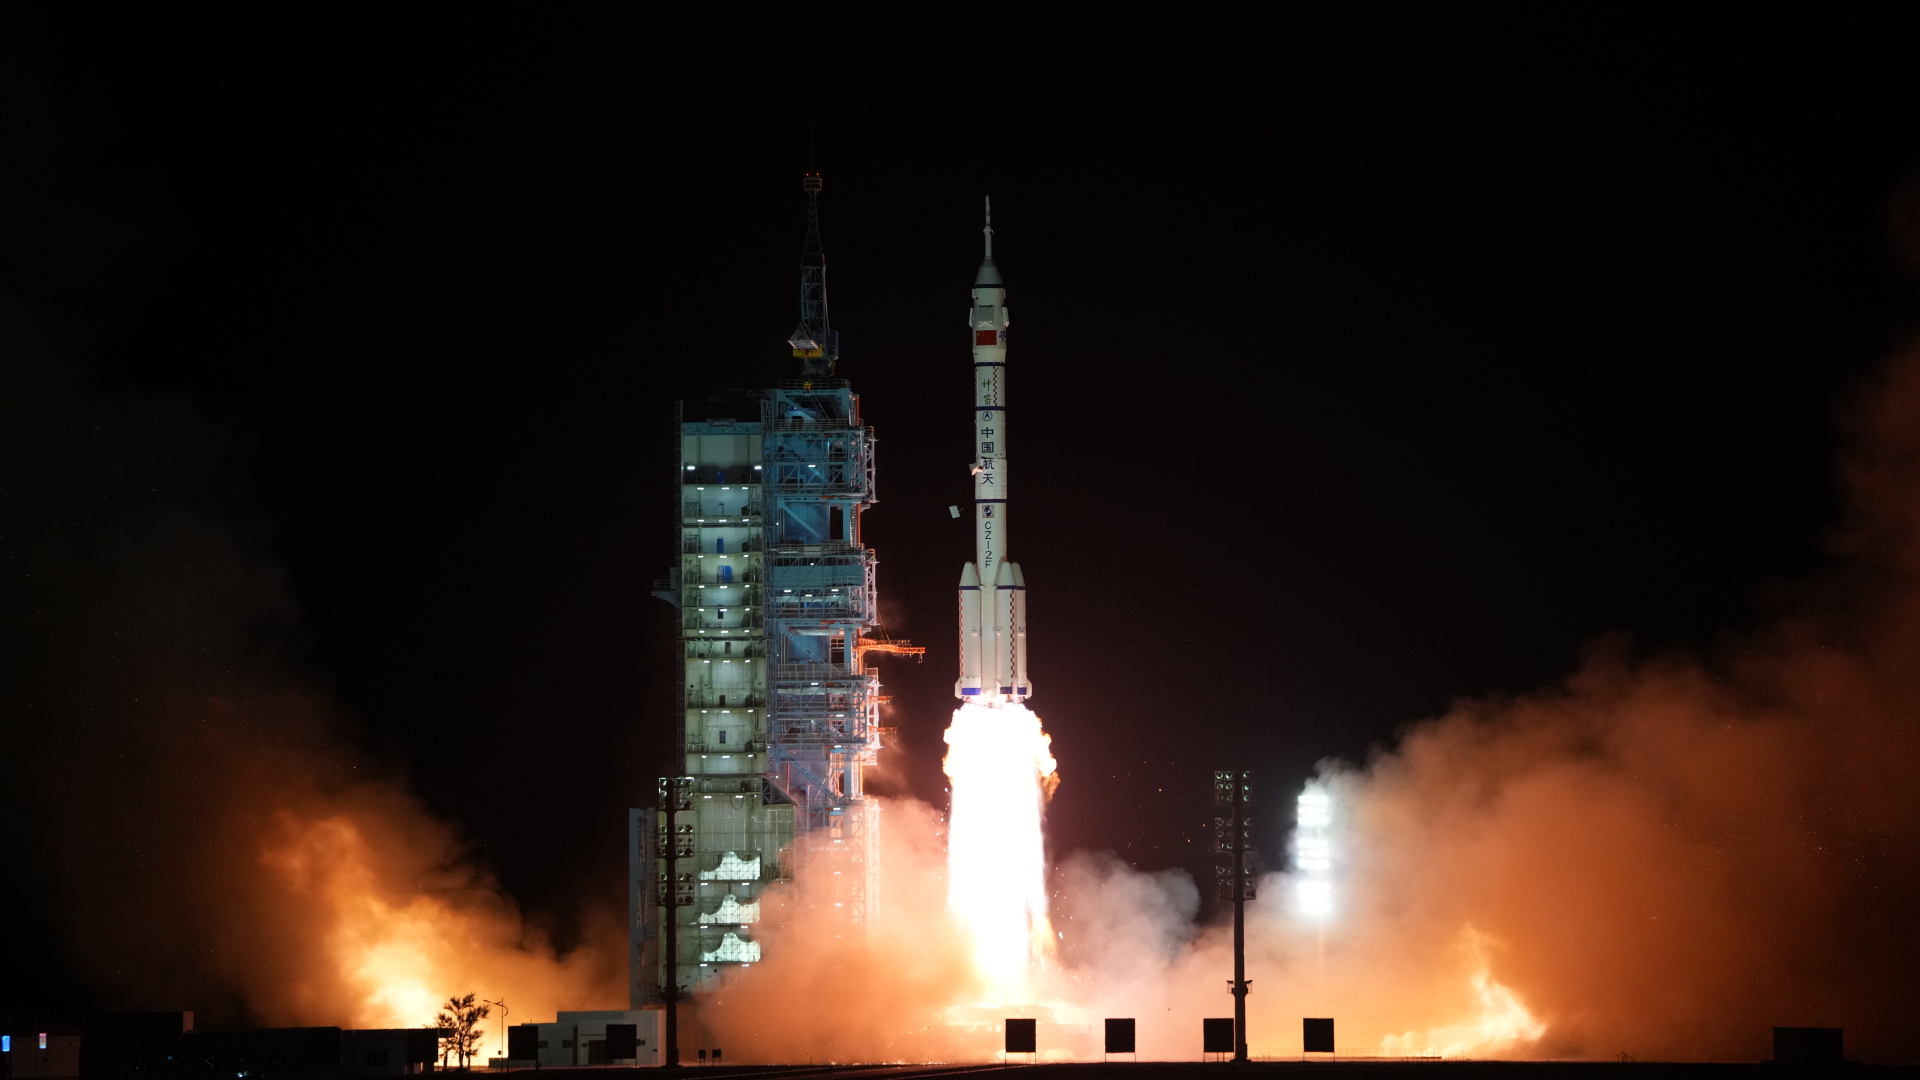 Das bemannte Raumschiff "Shenzhou 15" auf der Trägerrakete "Langer Marsch 2F" hebt vom Weltraumbahnhof Jiuquan im Nordwesten Chinas ab. China hat ein weiteres Astronauten-Team auf den Weg zu seiner neuen Raumstation "Tiangong" (Himmelspalast) geschickt. | dpa